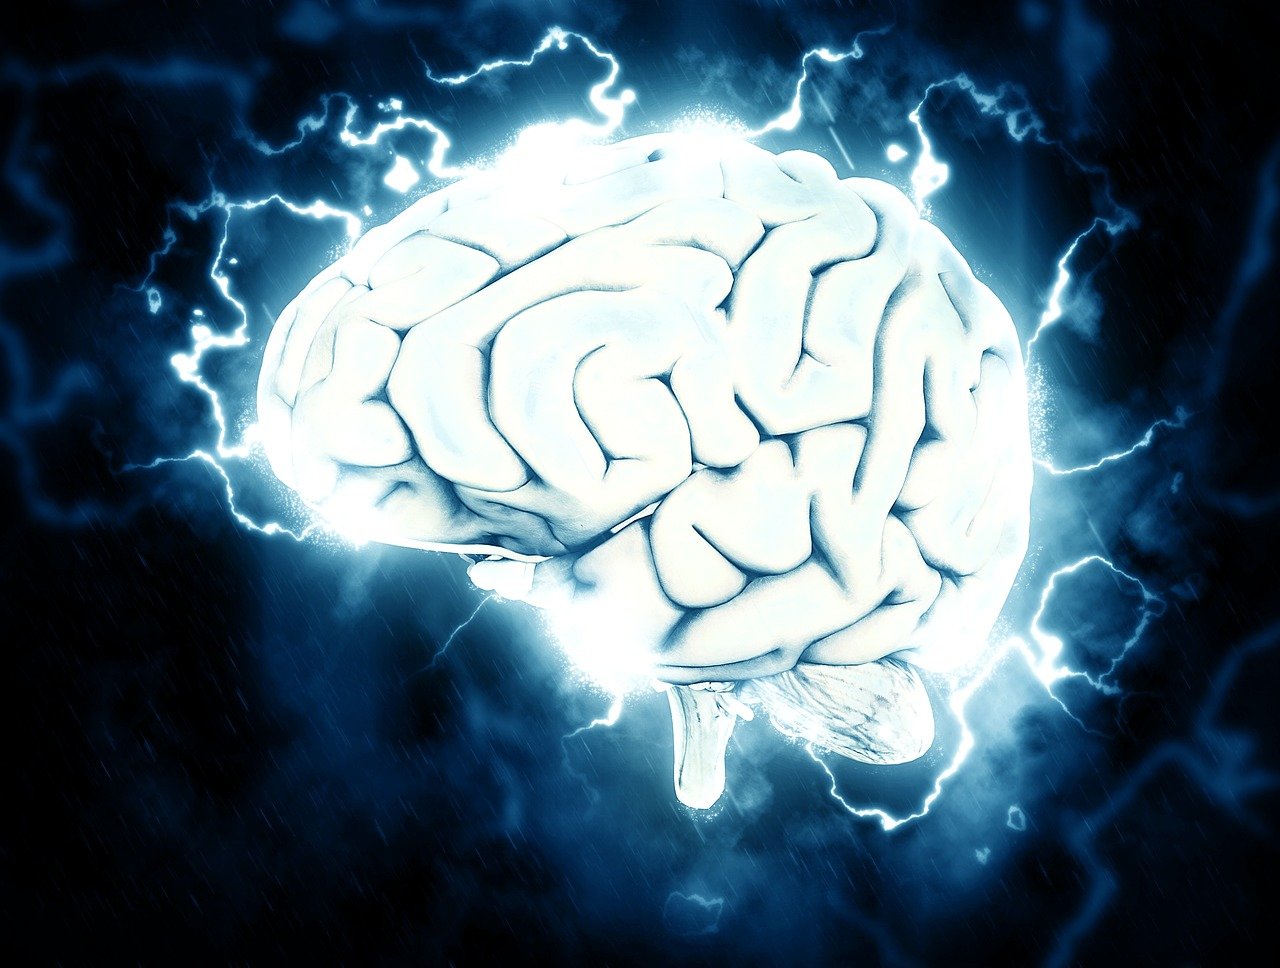 Magyar kutatók fedezték fel az agyunk fenyegetésre reagáló idegsejtjeit